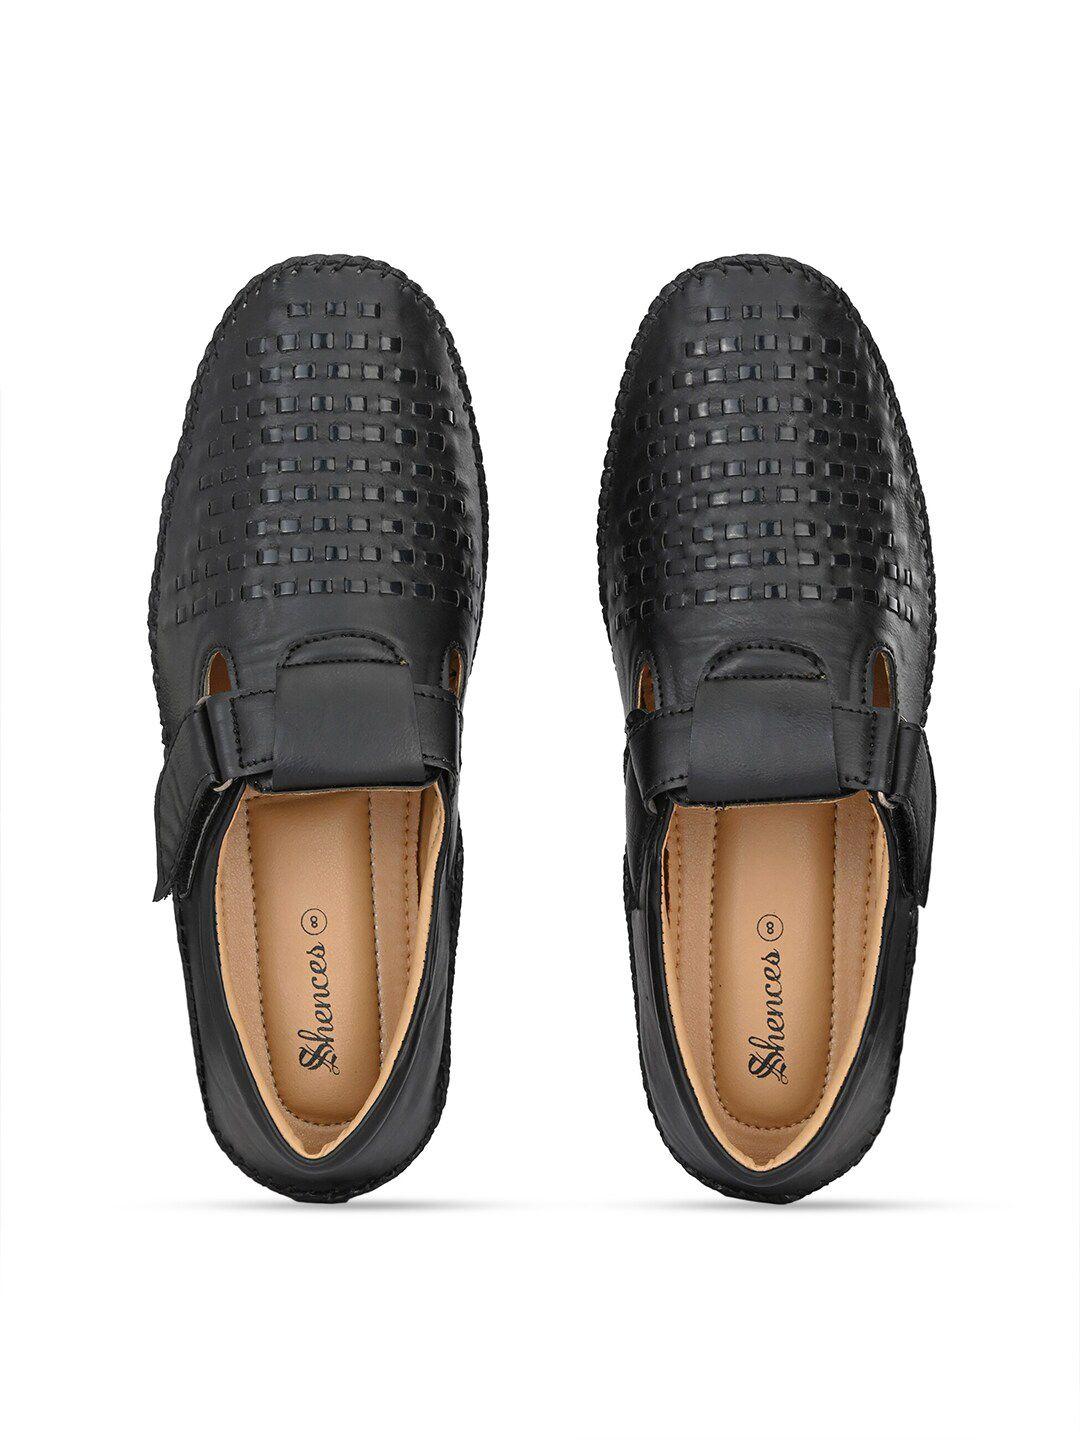 shences men black & brown shoe-style sandals